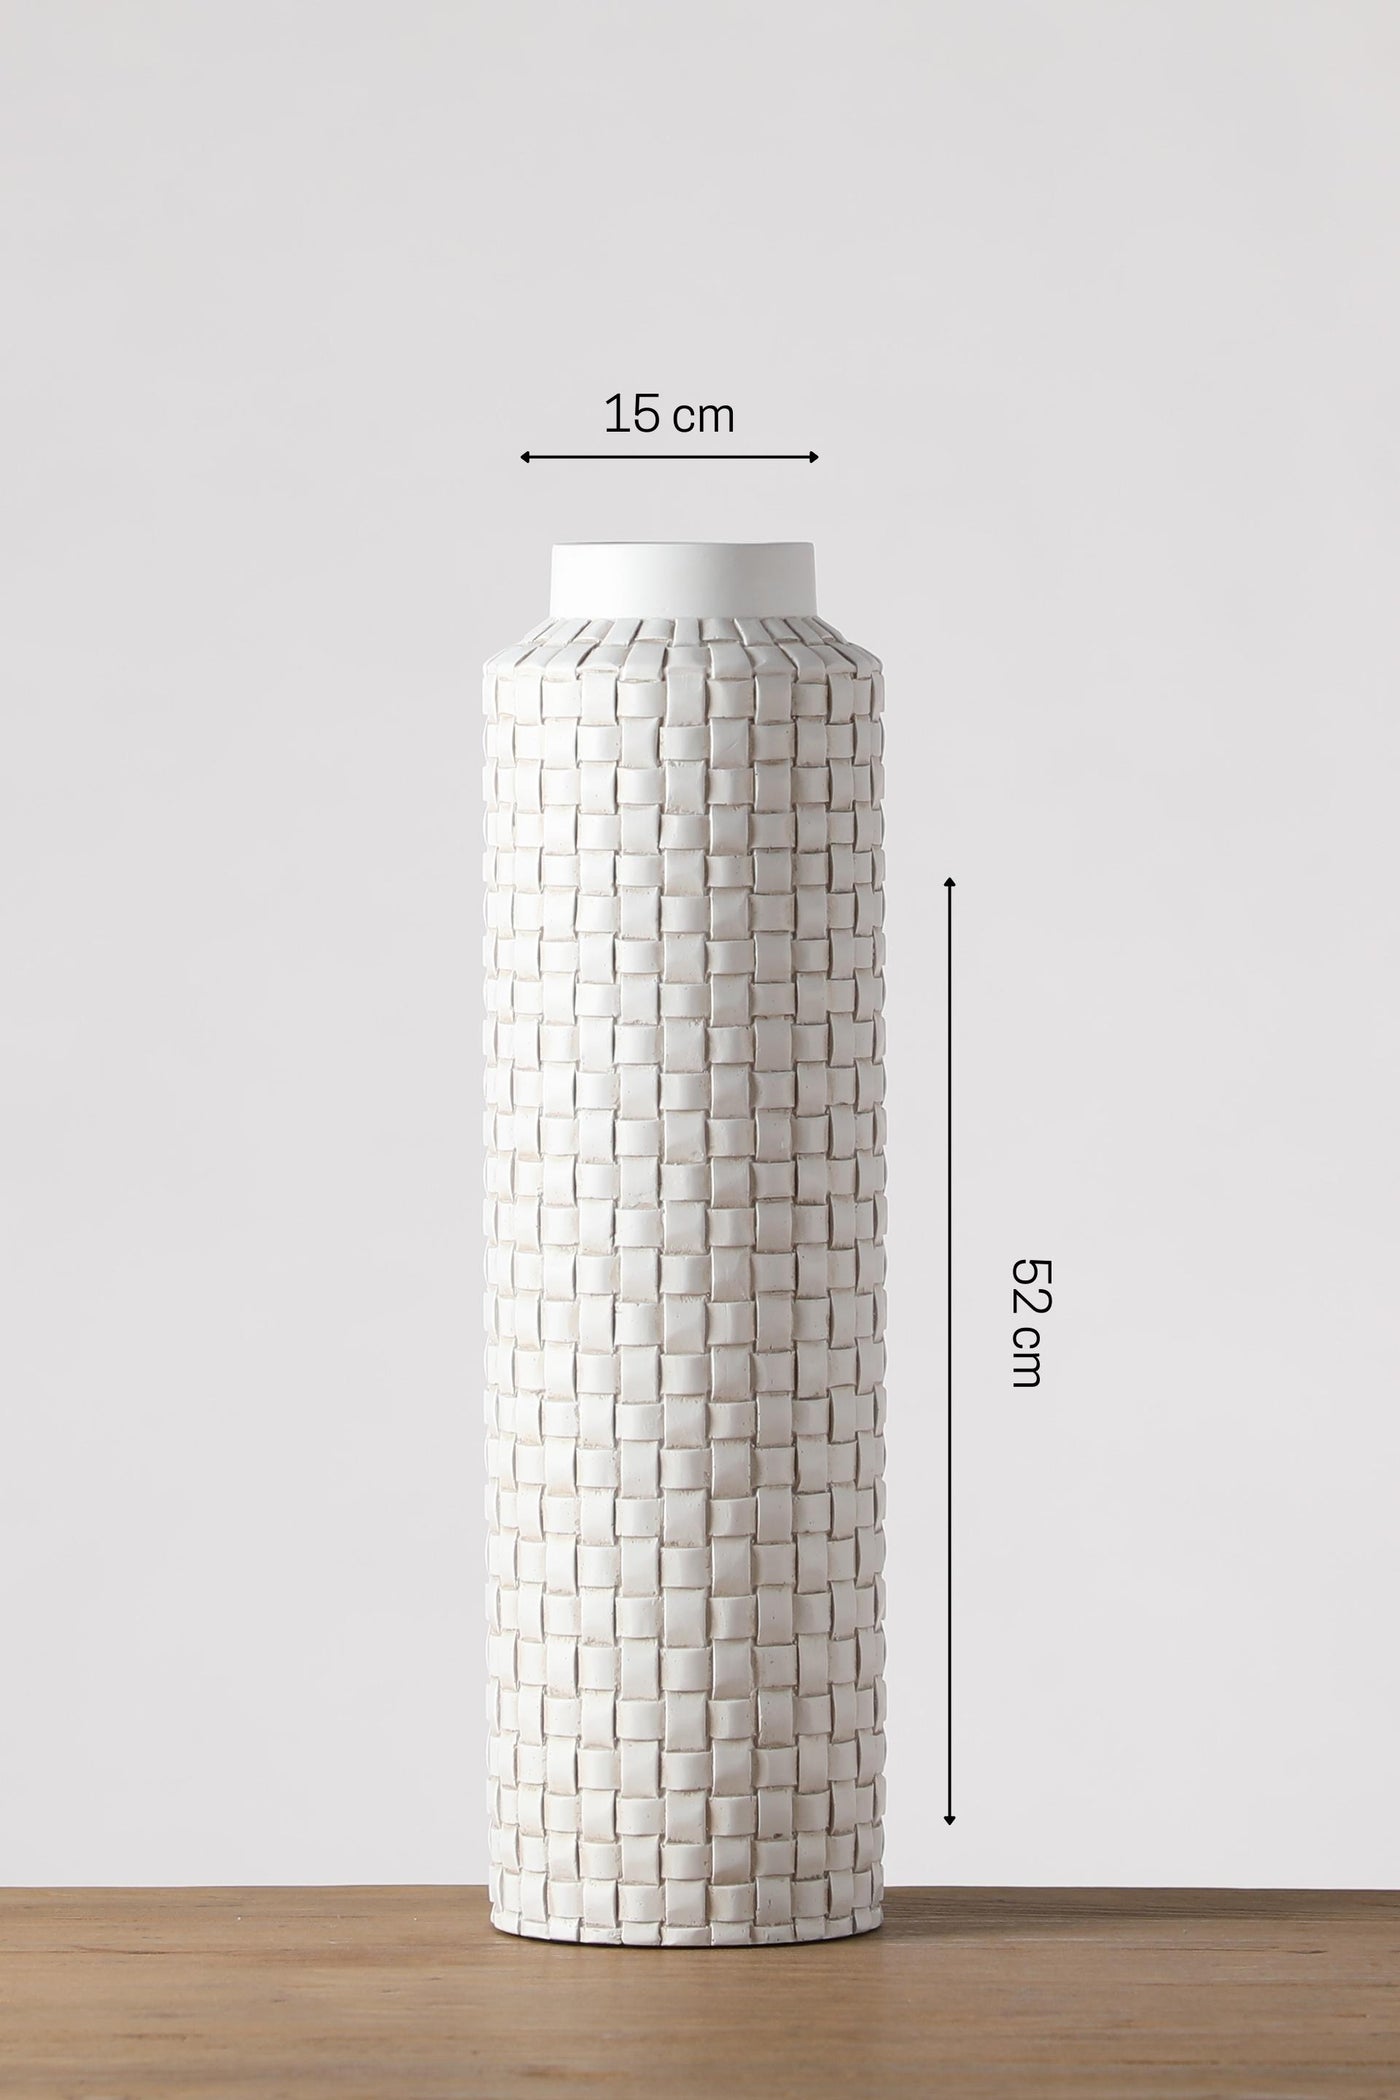 Slender shape new design resin vase for your home or office decor